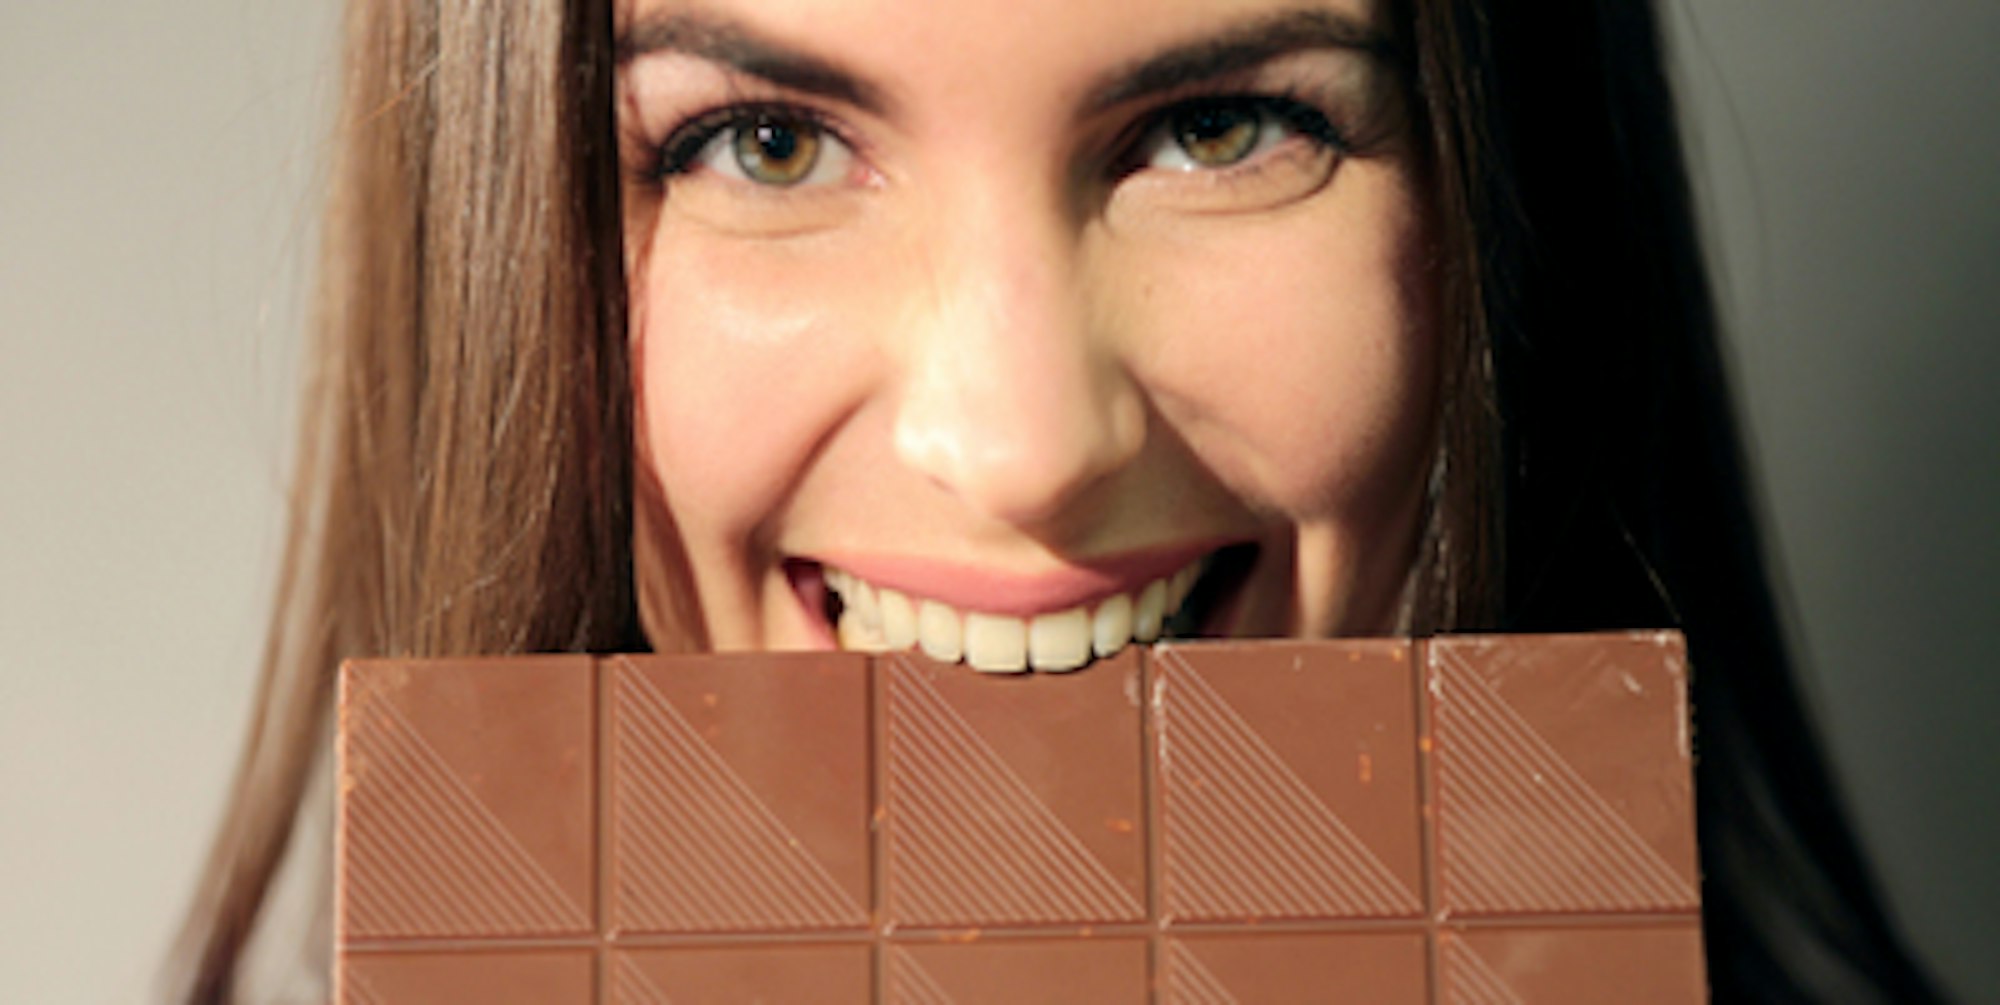 schokolade-naschen_heißhunger